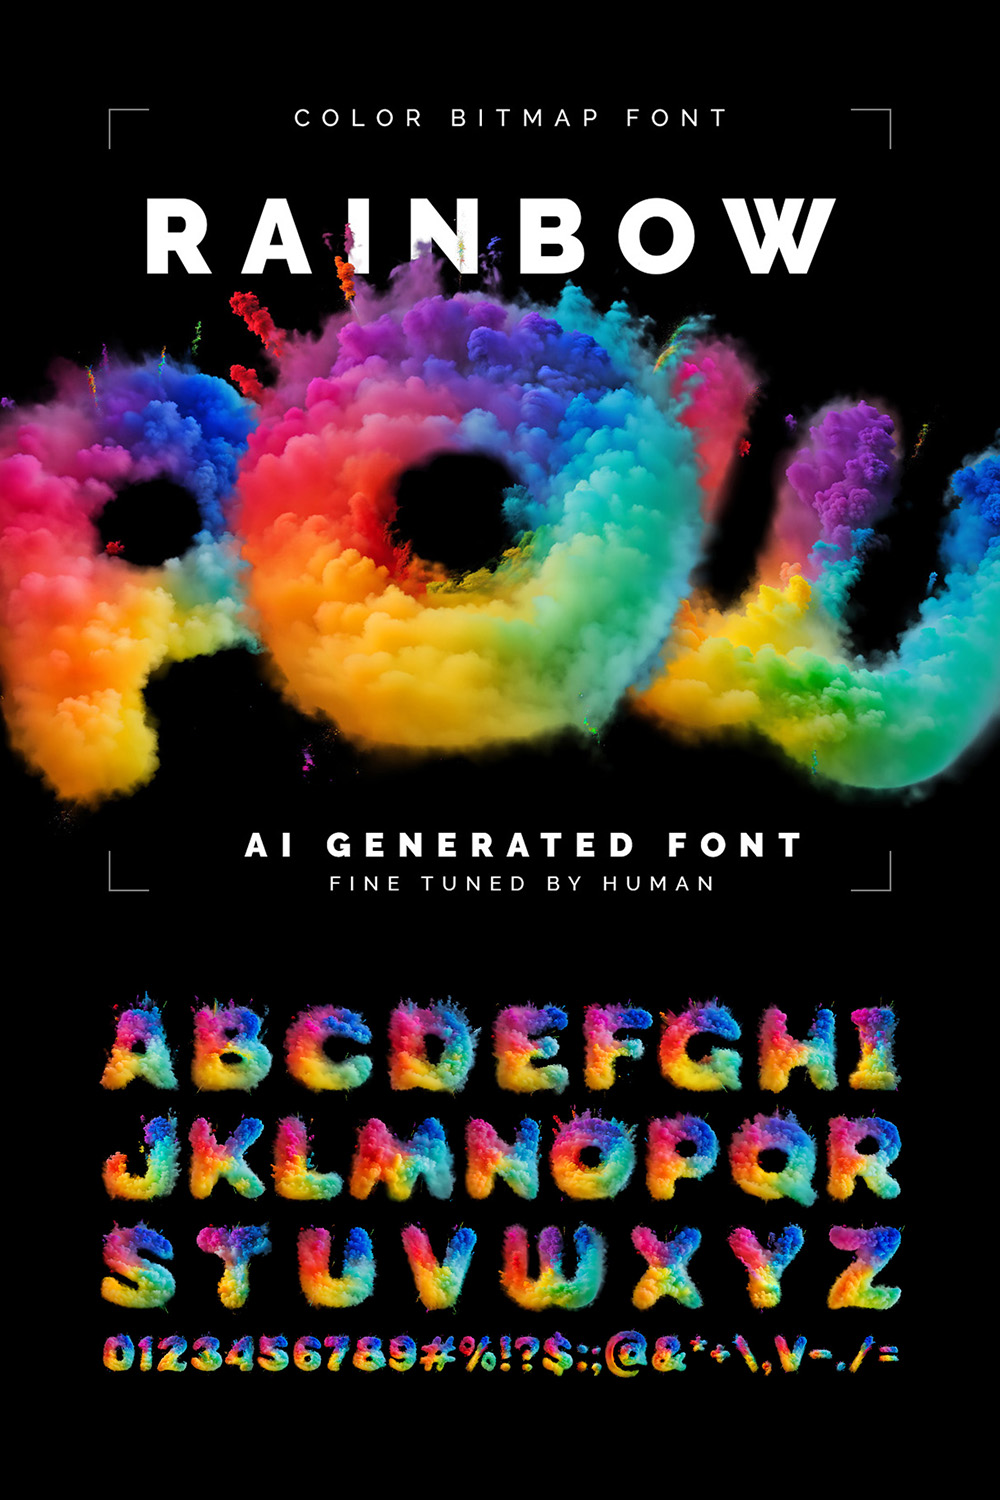 Rainbow Pow - Color Bitmap Font pinterest preview image.